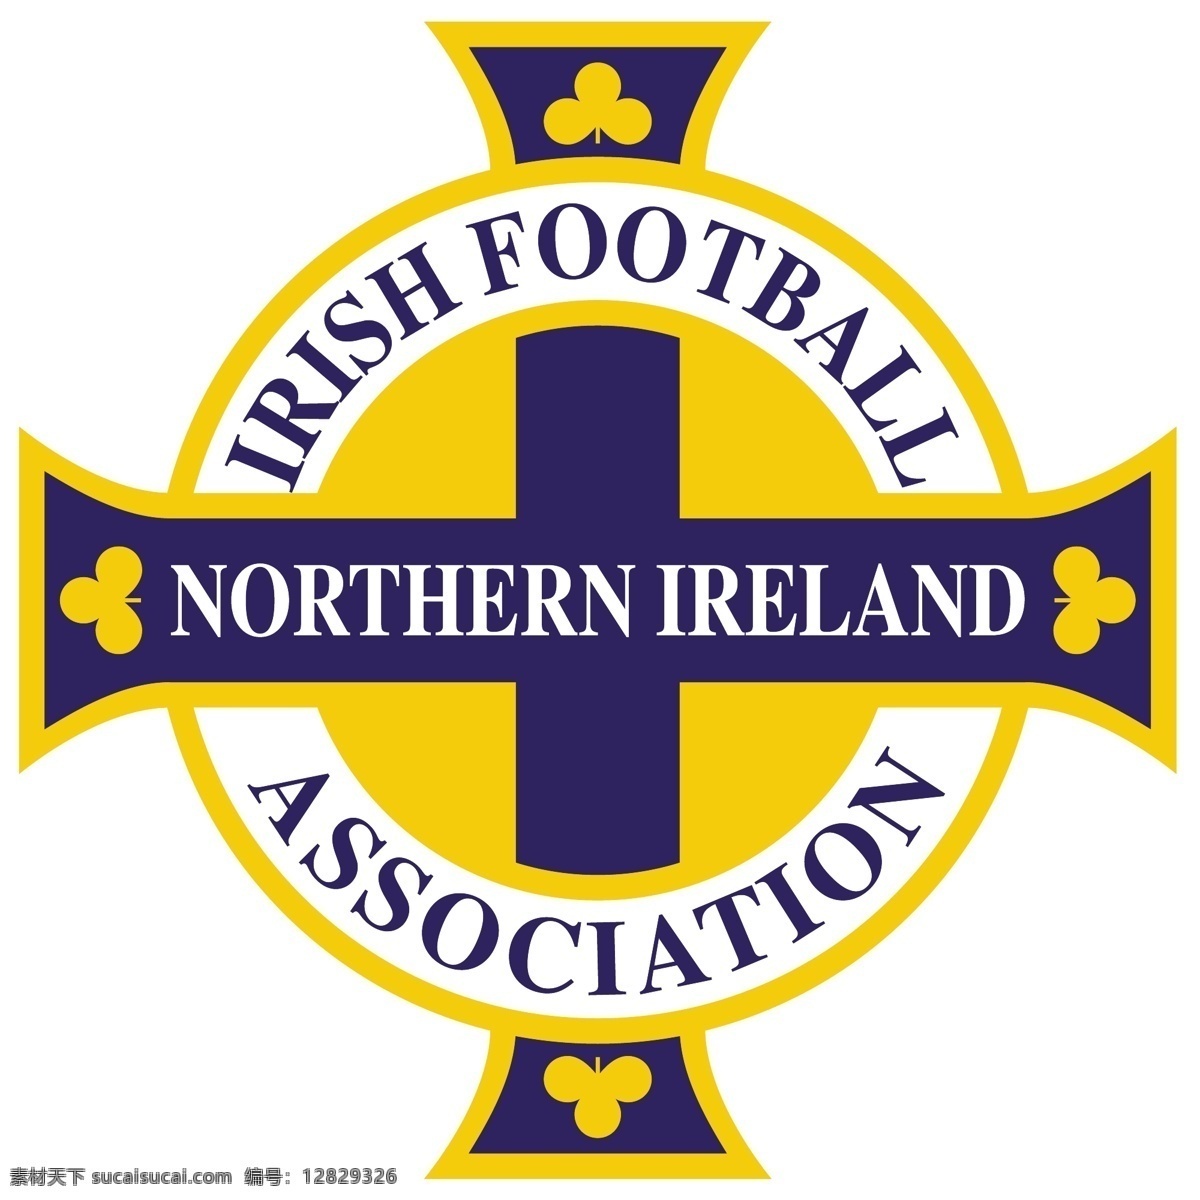 爱尔兰 足球 协会 标识 公司 免费 品牌 品牌标识 商标 矢量标志下载 免费矢量标识 矢量 psd源文件 logo设计